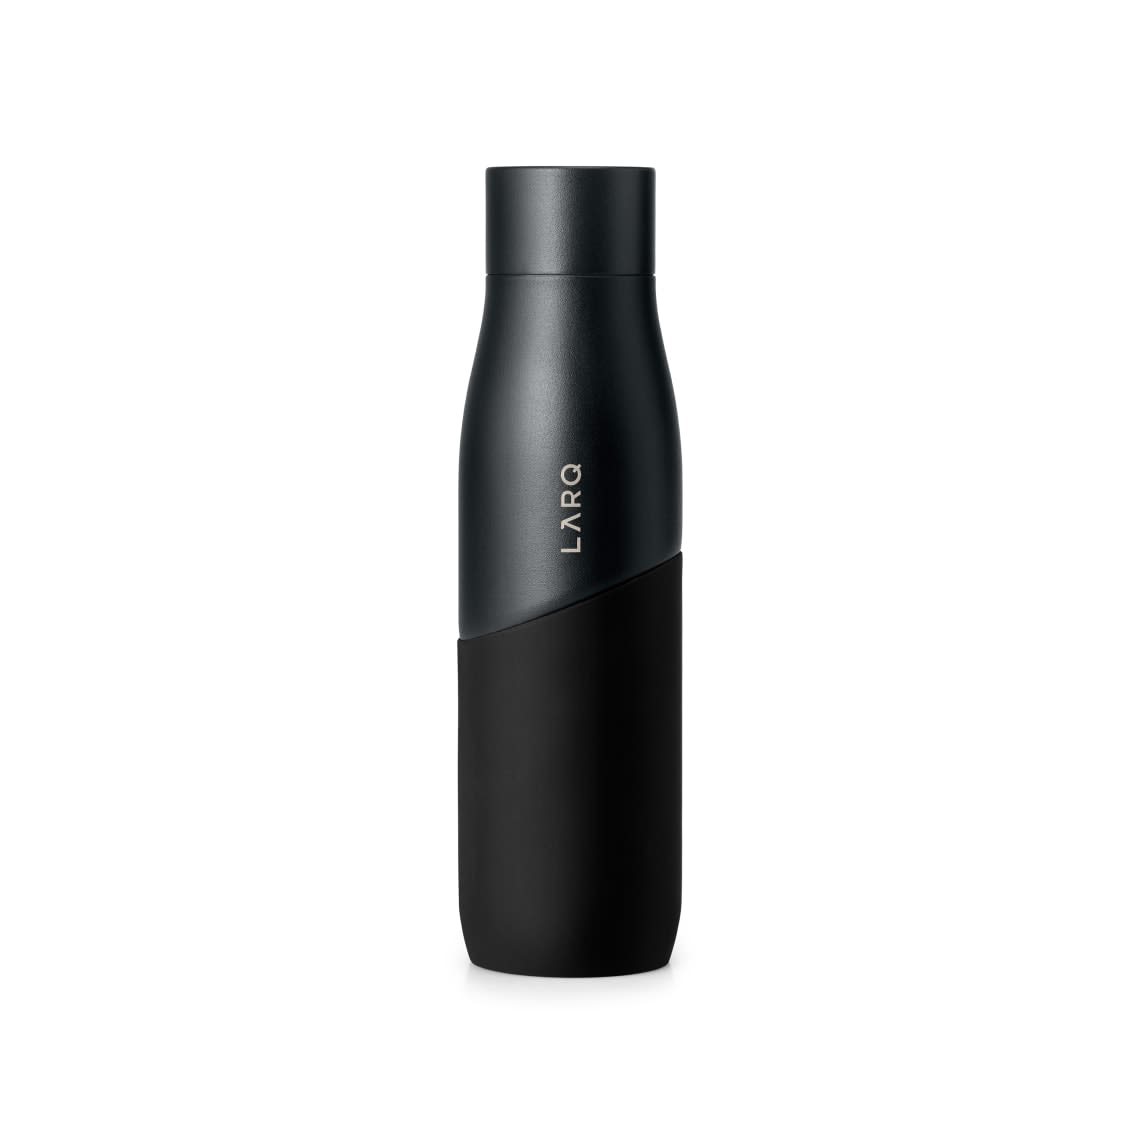 LARQ Bottle Movement PureVis™ in Black Onyx Color 2